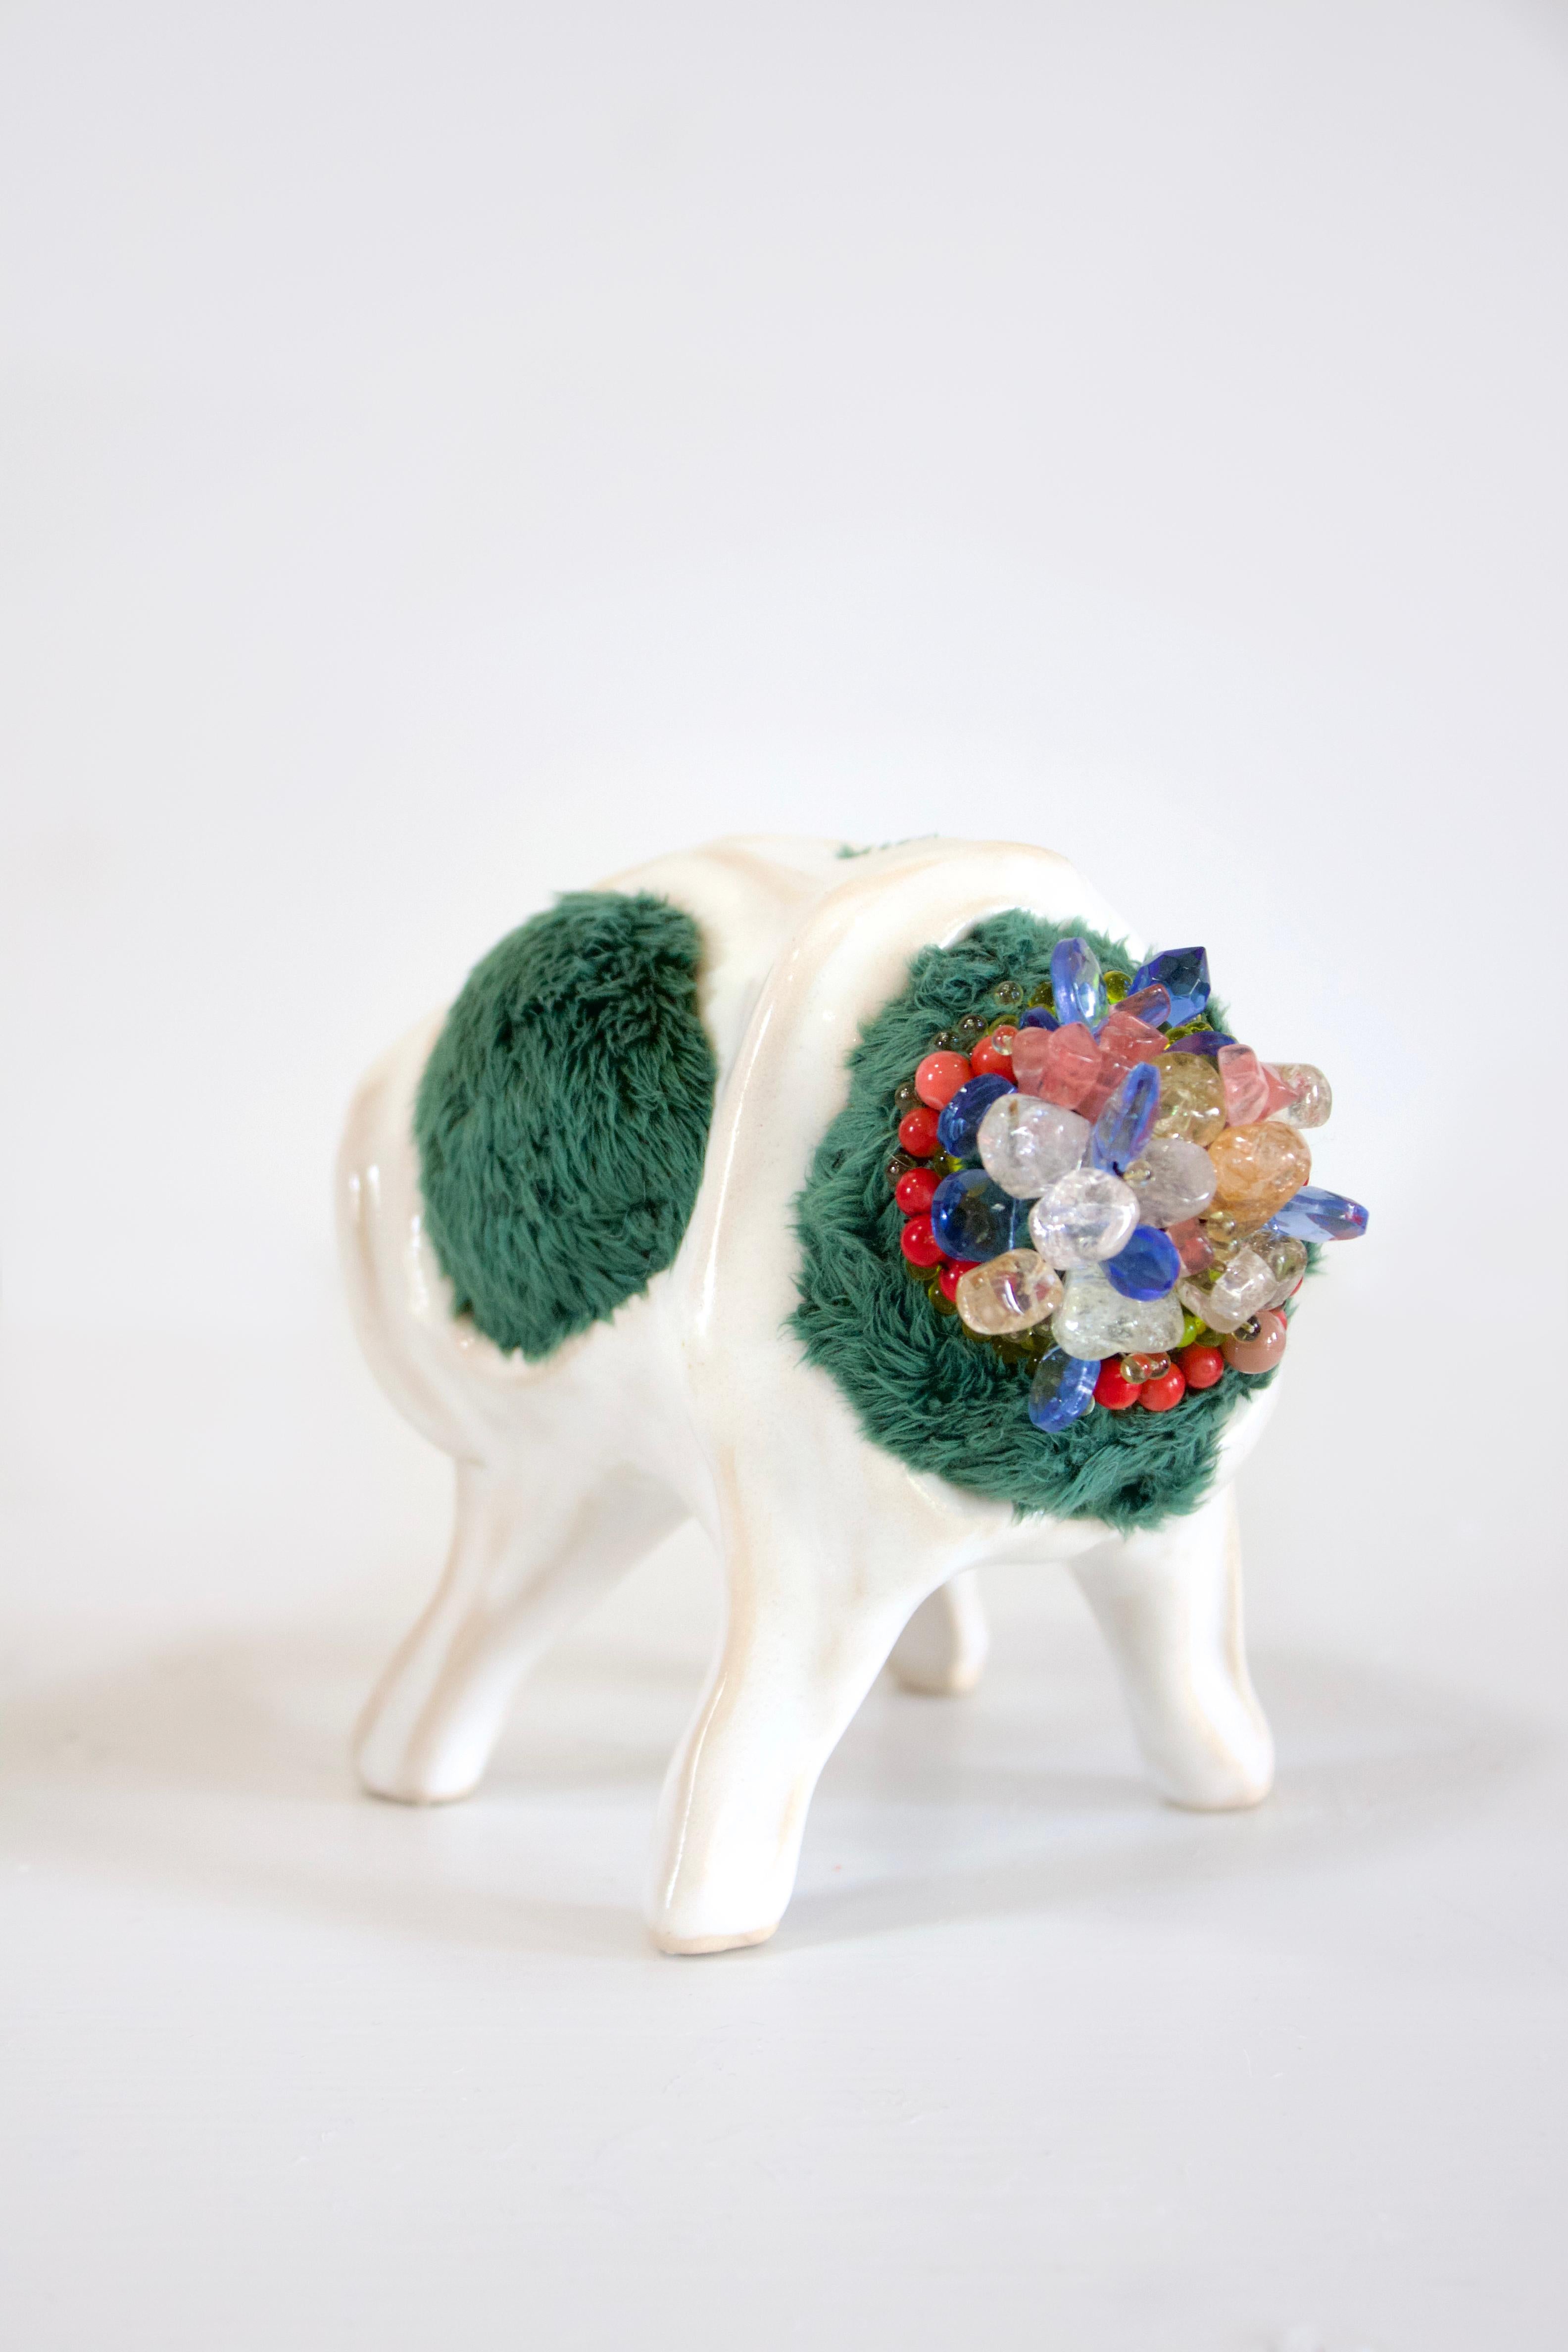 Hanna Washburn Abstract Sculpture – Moss Body, Textil, gemustert, rosa, rot, blau, grün, organisch, Keramik, weiß